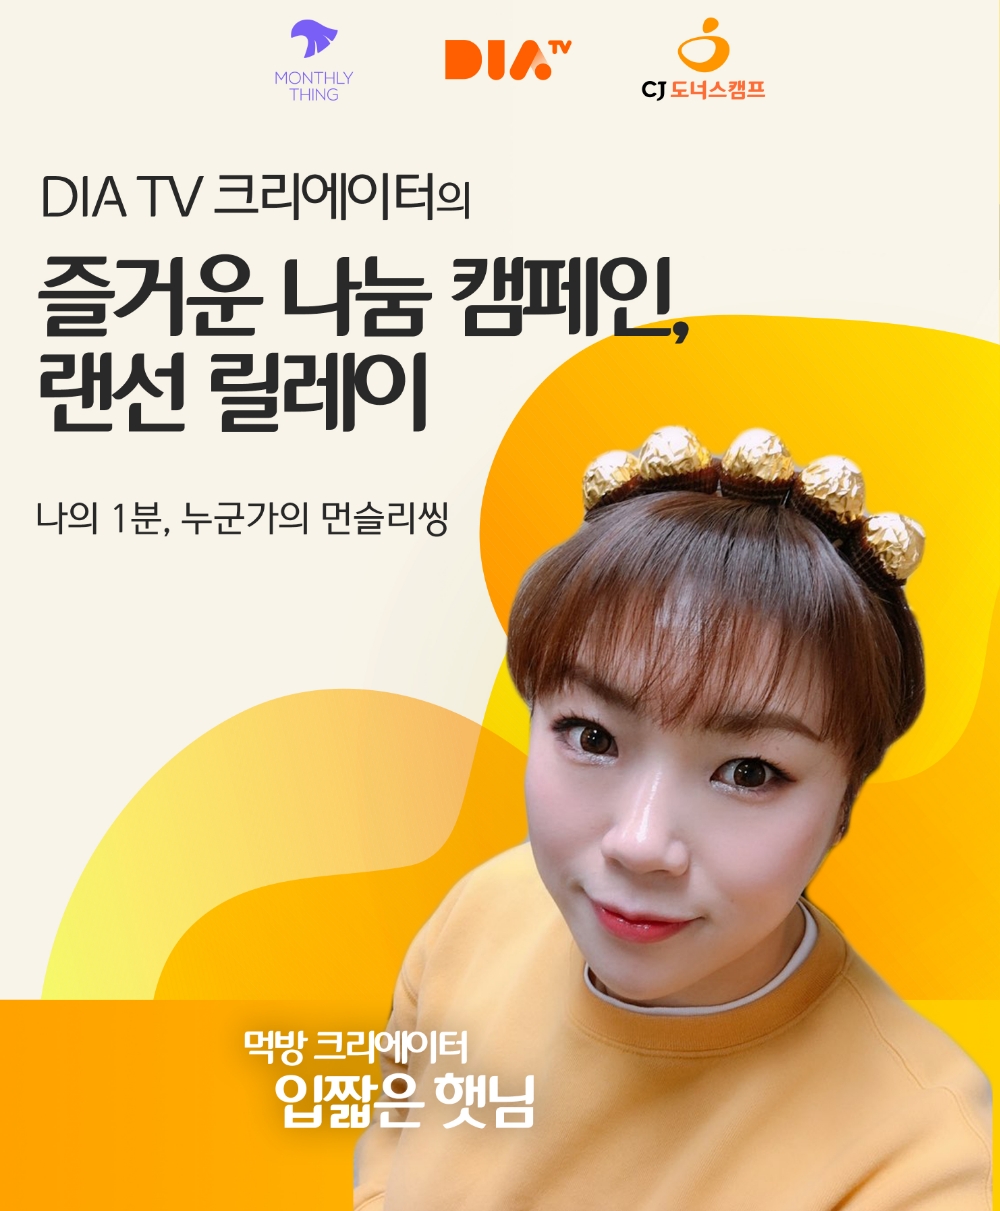 CJ ENM 다이아 티비, CJ도너스캠프·먼슬리씽과 여성 용품 기부 릴레이 캠페인 진행